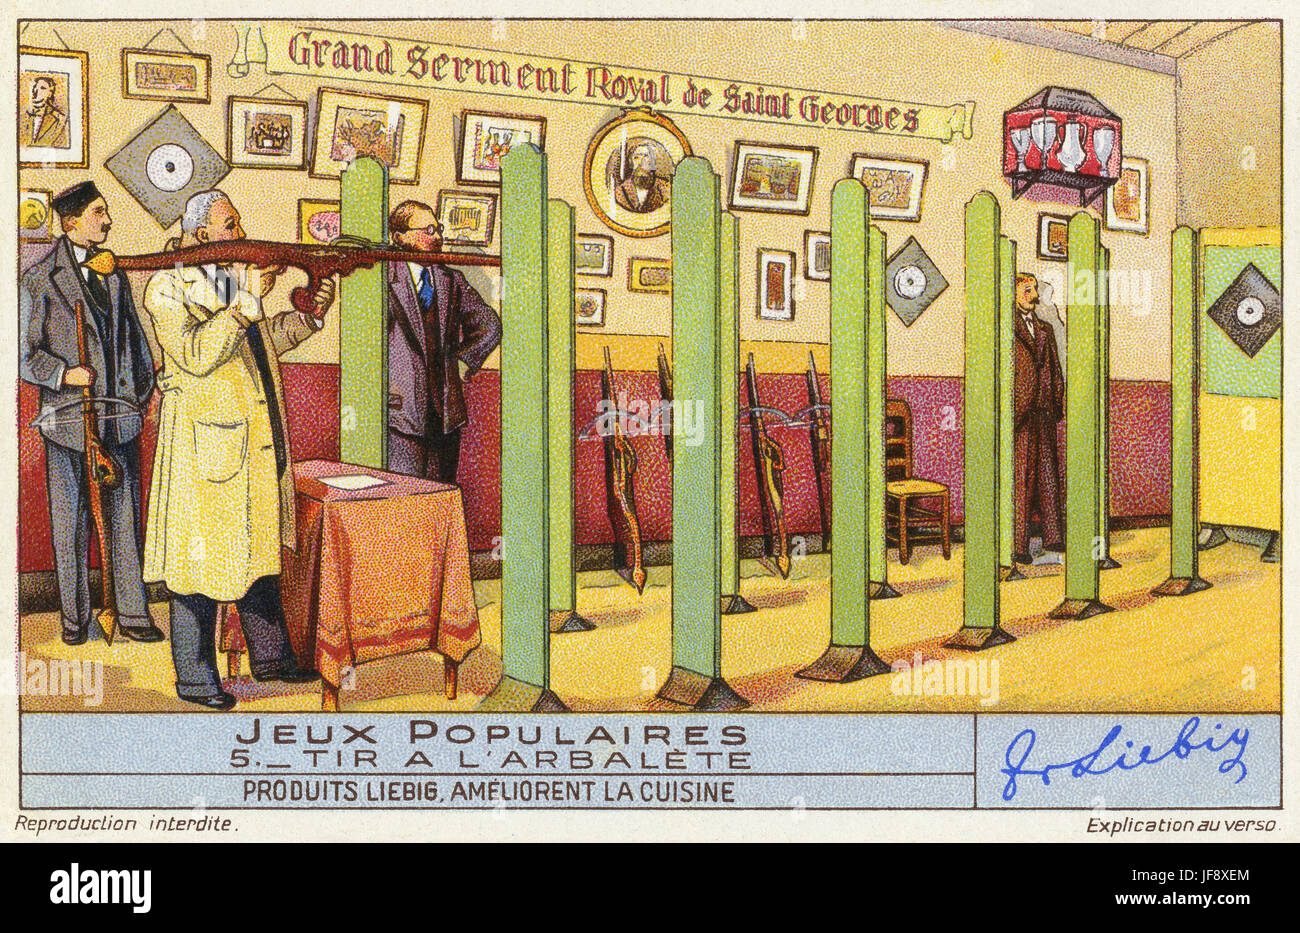 Tir à l'arbalète (tir a l'arbalete). Jeux populaires, au début du xxe siècle en France. Carte de collection Liebig, 1939 Banque D'Images